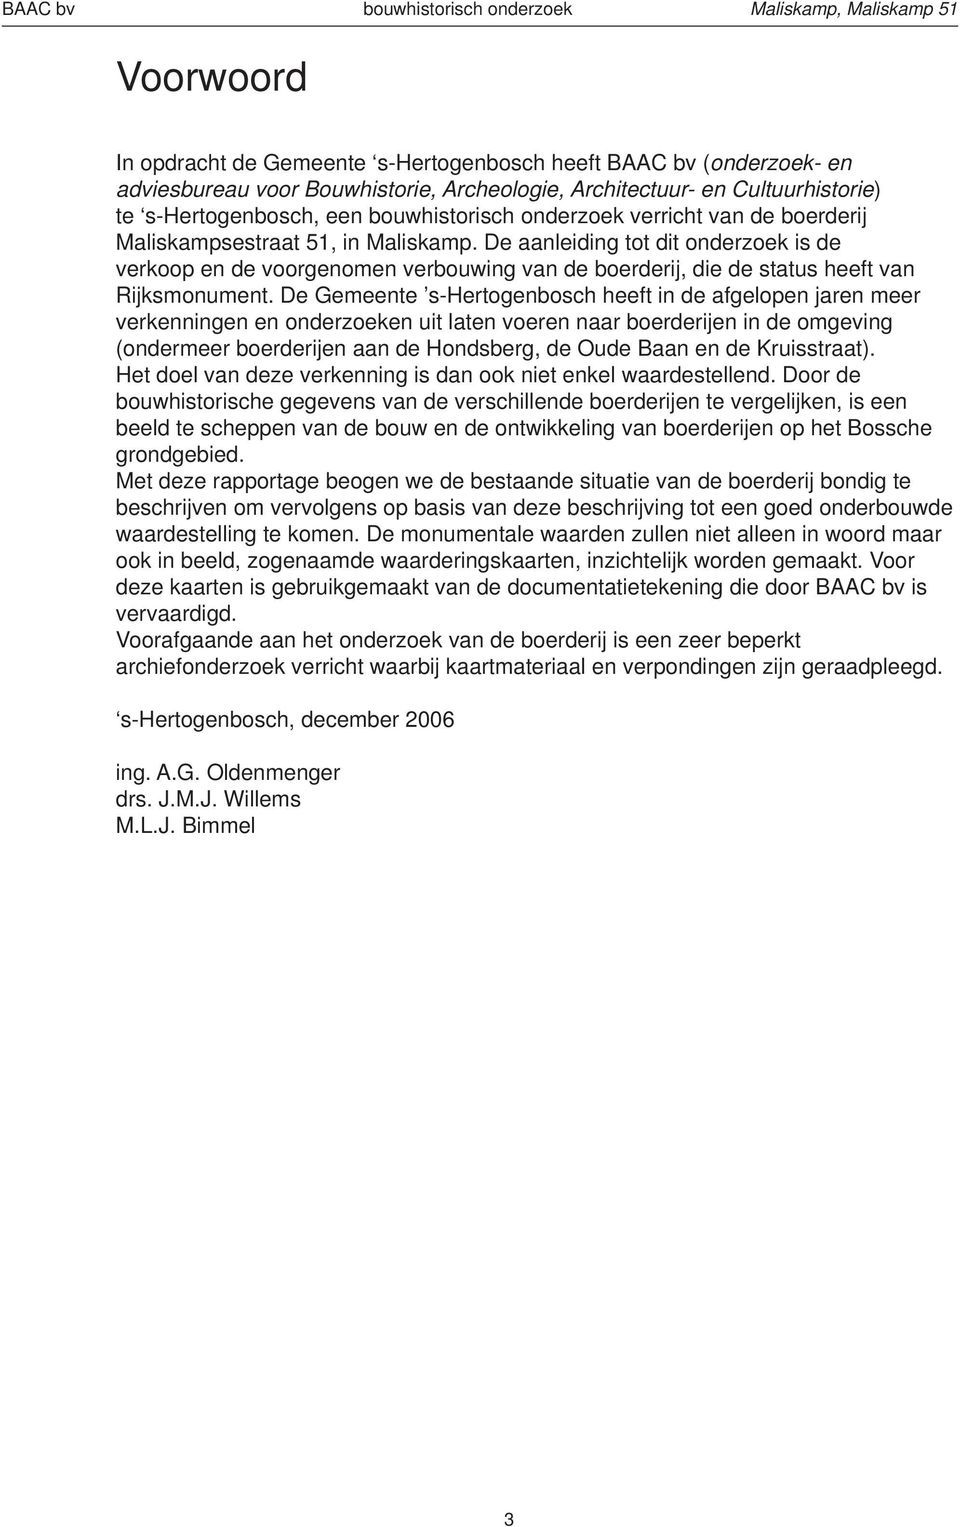 De aanleiding tot dit onderzoek is de verkoop en de voorgenomen verbouwing van de boerderij, die de status heeft van Rijksmonument.